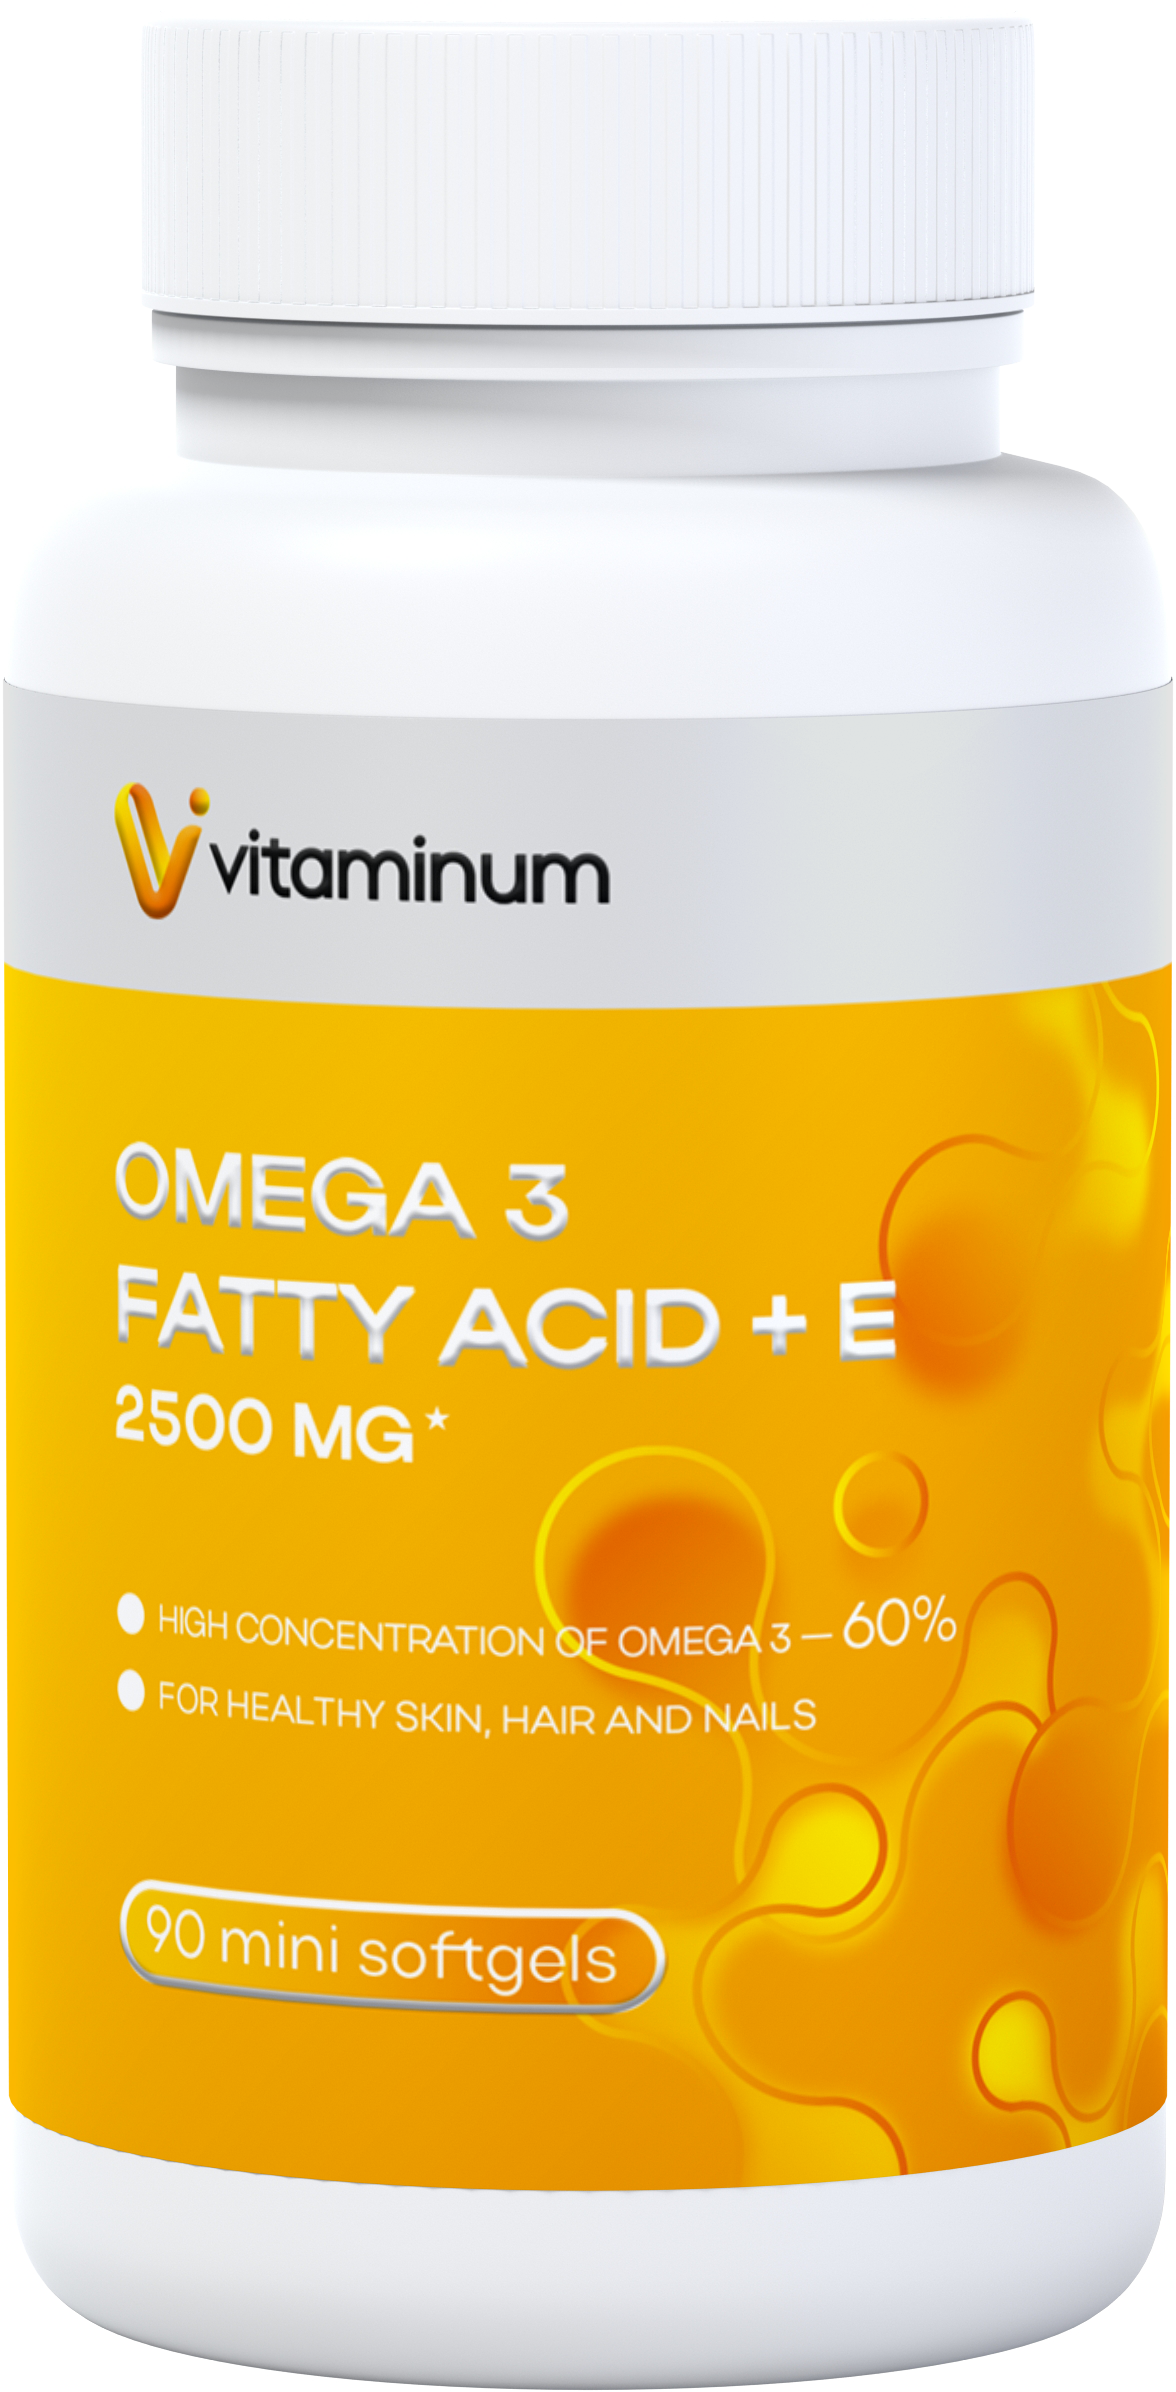  Vitaminum ОМЕГА 3 60% + витамин Е (2500 MG*) 90 капсул 700 мг   в Костроме